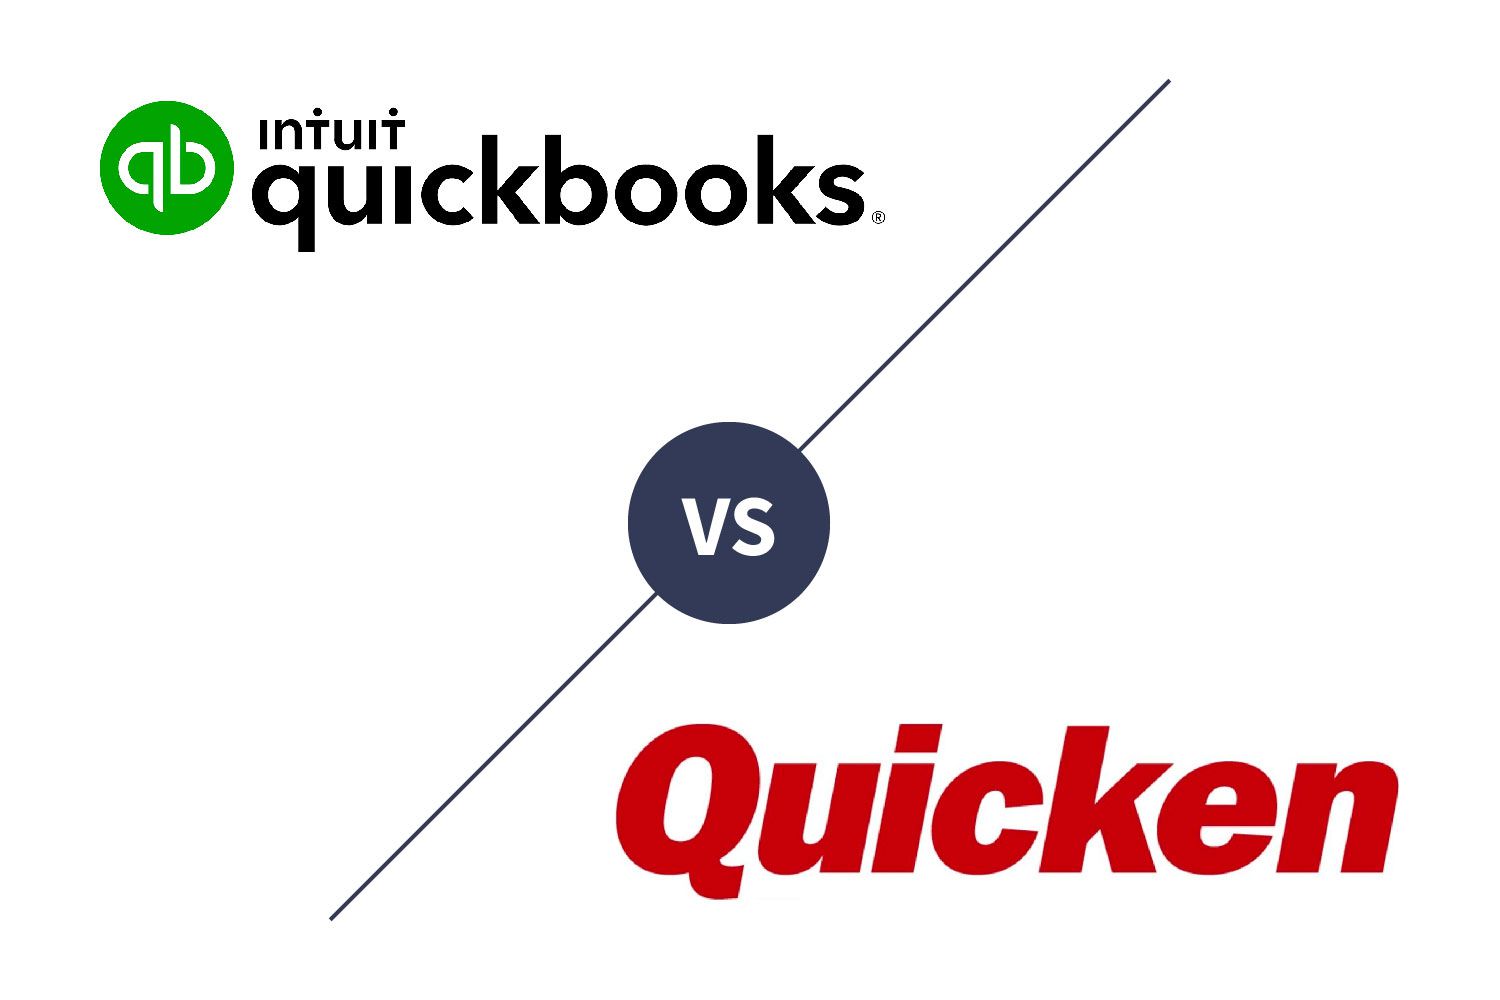 QuickBooks vs Quicken